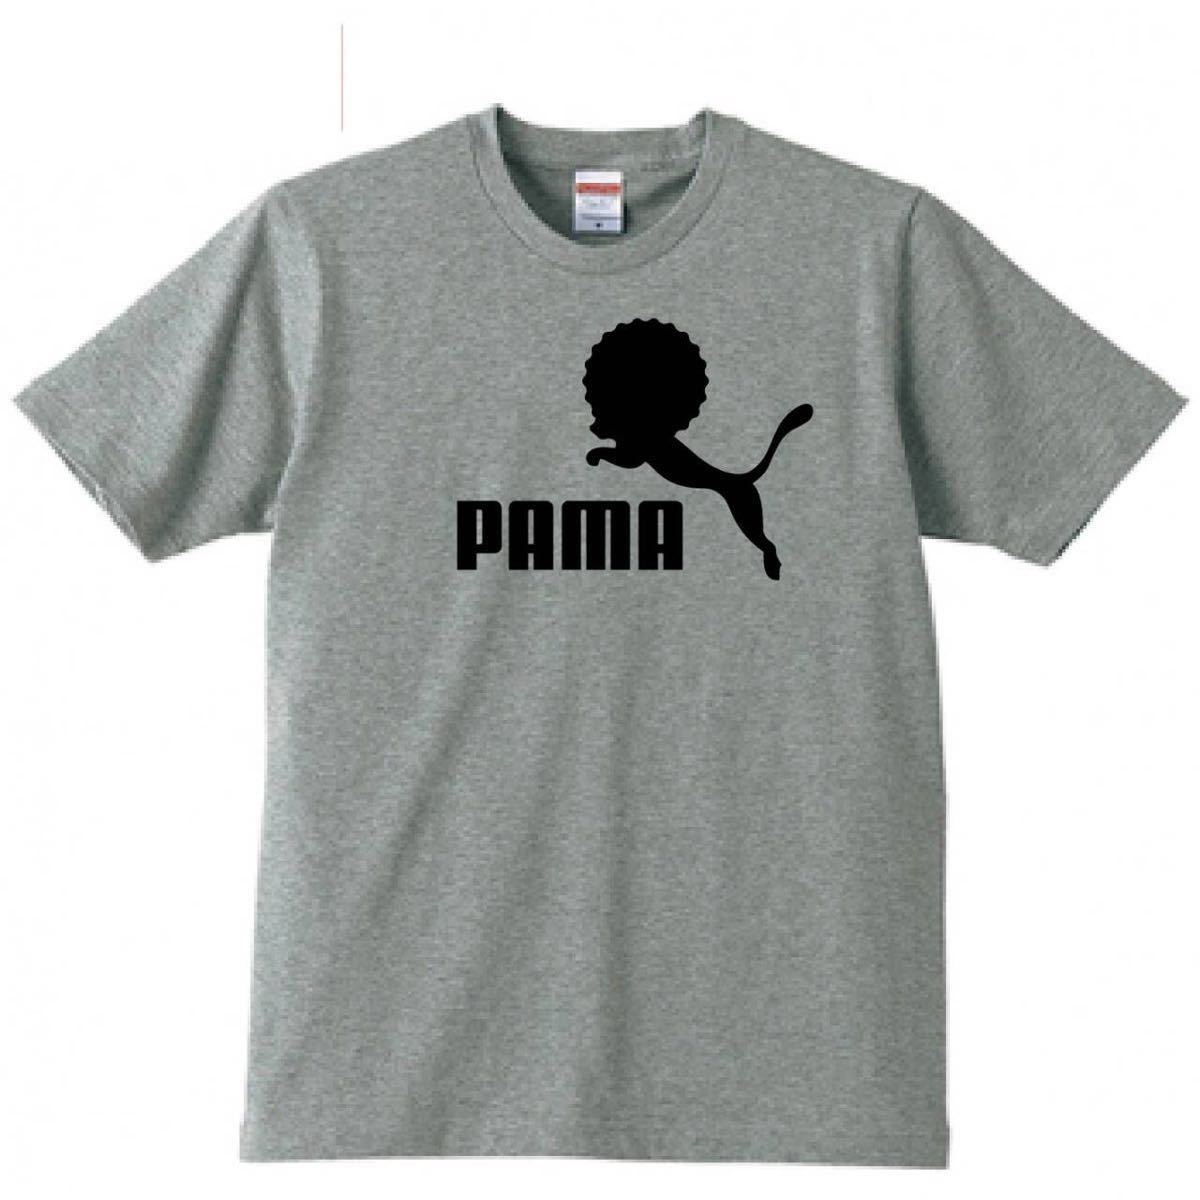 【送料無料】【新品】PAMA パーマ Tシャツ パロディ おもしろ プレゼント メンズ グレー 2XLサイズ 大きいサイズ_画像1